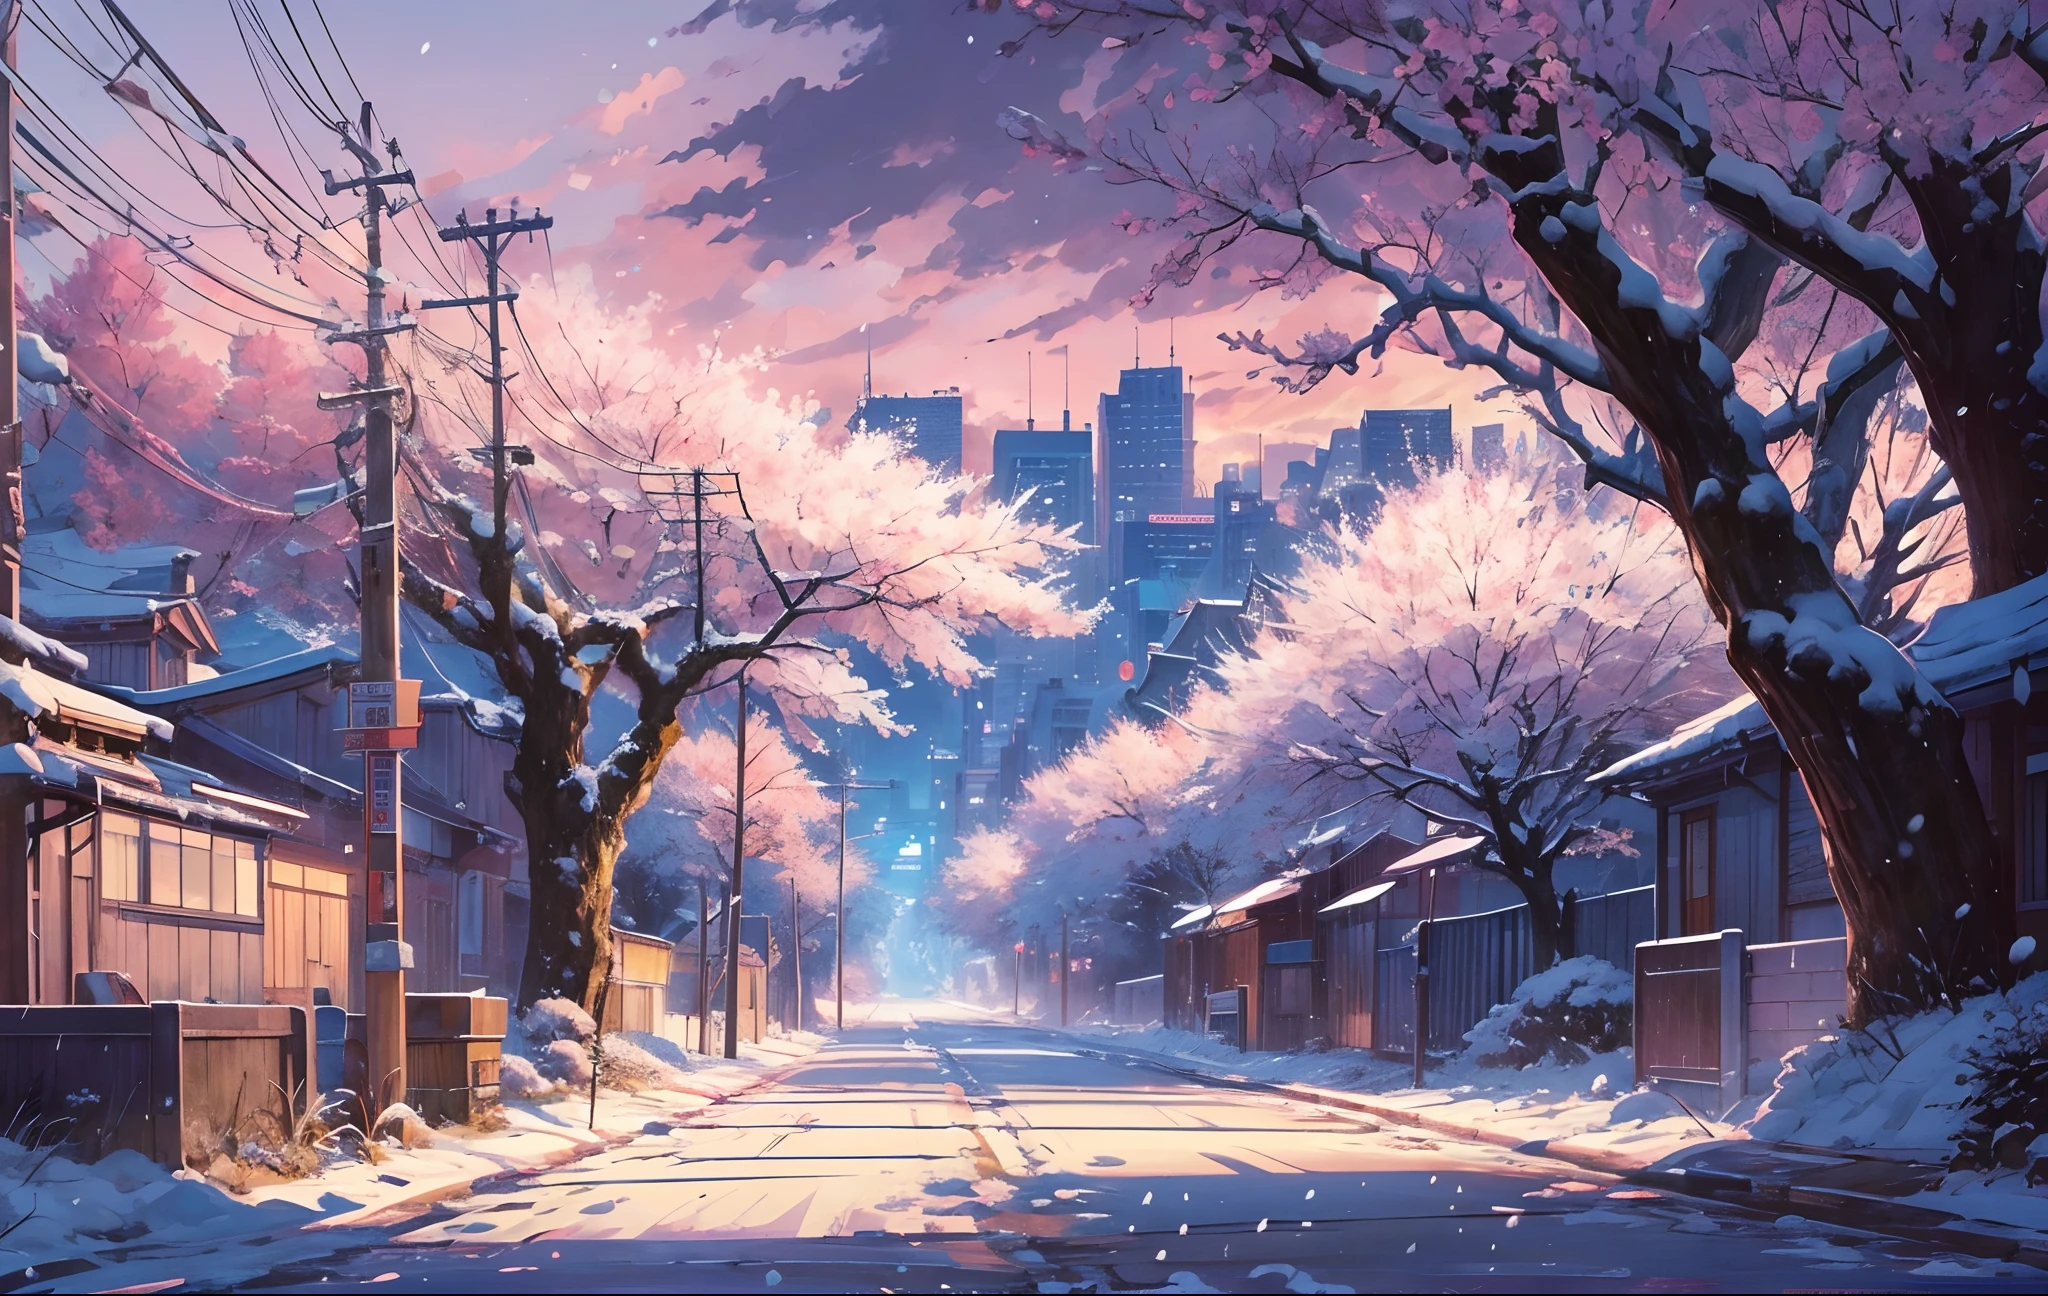 걸작, 컨셉 아트, 와이드 샷, 파노라마, 거리에 다리가 있는 밤의 거리, (겨울), 눈 내리는, 상세한 매트 페인팅, By Makoto Shinkai, 와이드스크린 샷, 차도, 벚꽃나무가 늘어선 길, 미야자키의 애니메이션 영화, 끝없는 밤, 거리의 벚꽃나무, 컬러로 보는 영화 예술, 상세한 디지털 애니메이션 아트, (서사적 구성, 서사시적인 비율), HD